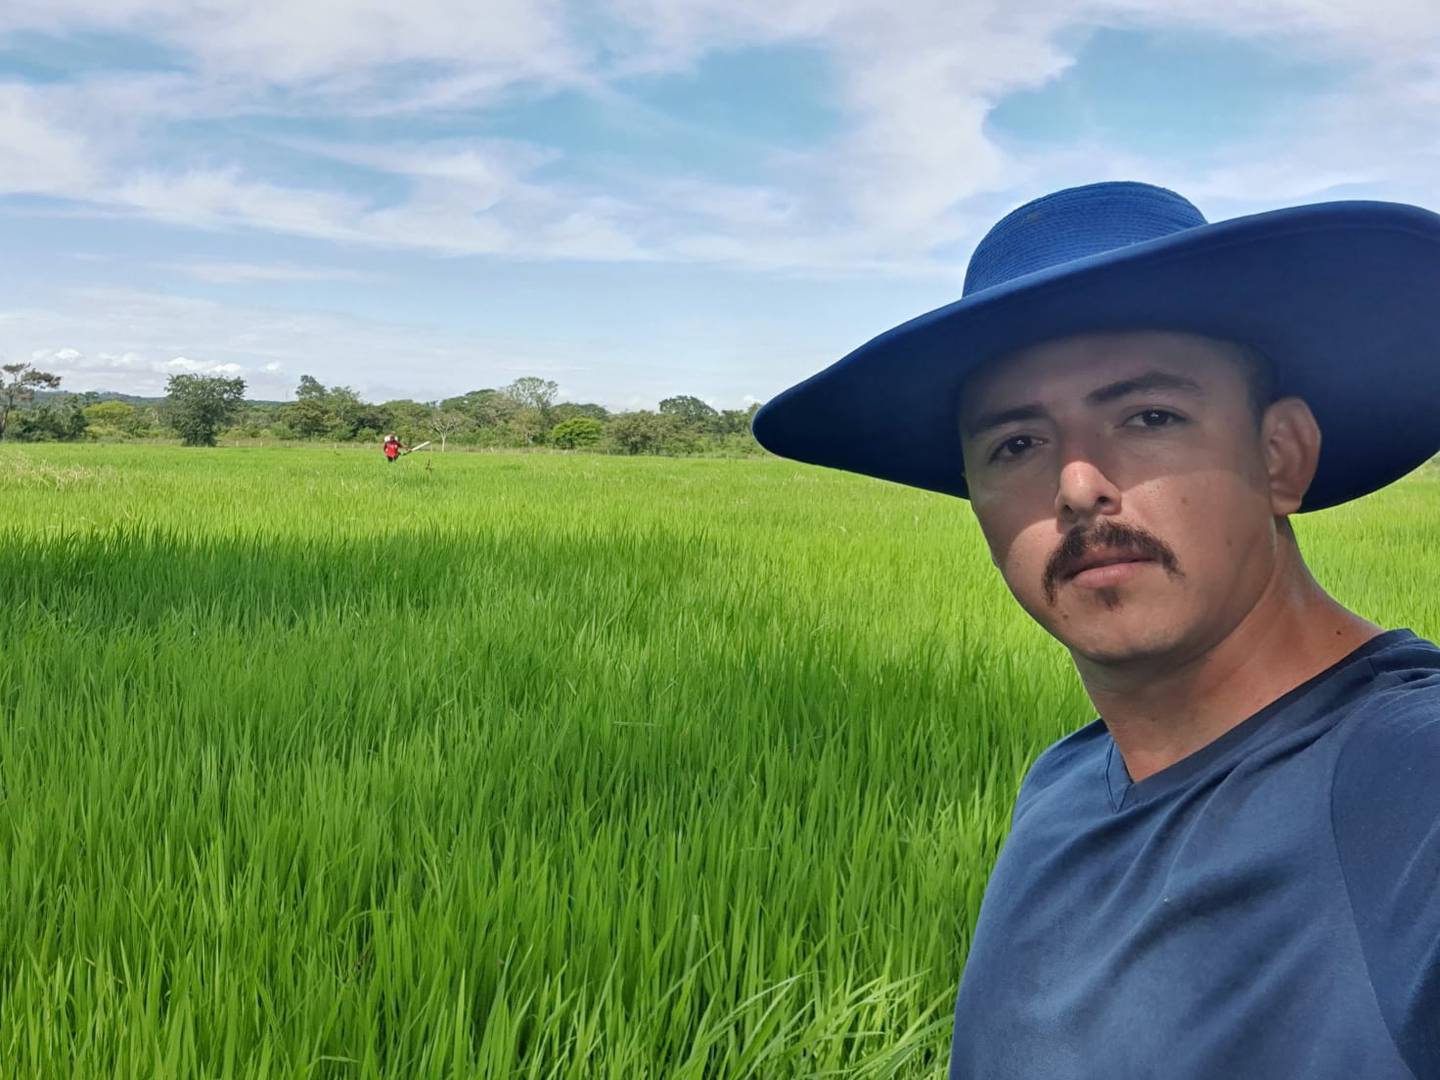 Desde el pasado miércoles 6 de julio la vida de don Andrés Ulate Jiménez, productor de arroz del sector Chorotega de Guanacaste cambió totalmente y no fue para bien